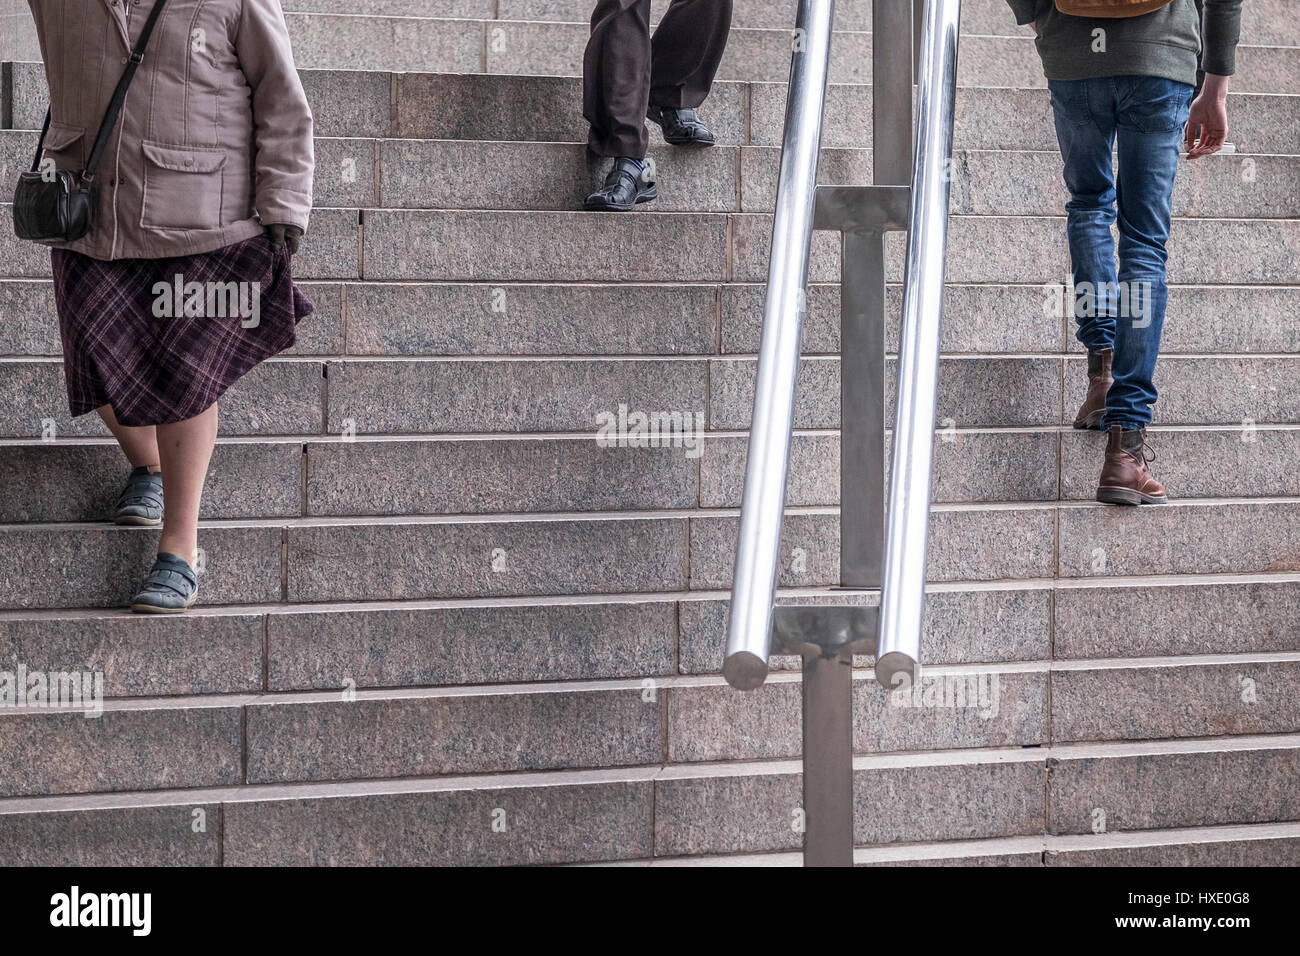 Personnes montant descendre marches escaliers pieds jambes main courante Banque D'Images